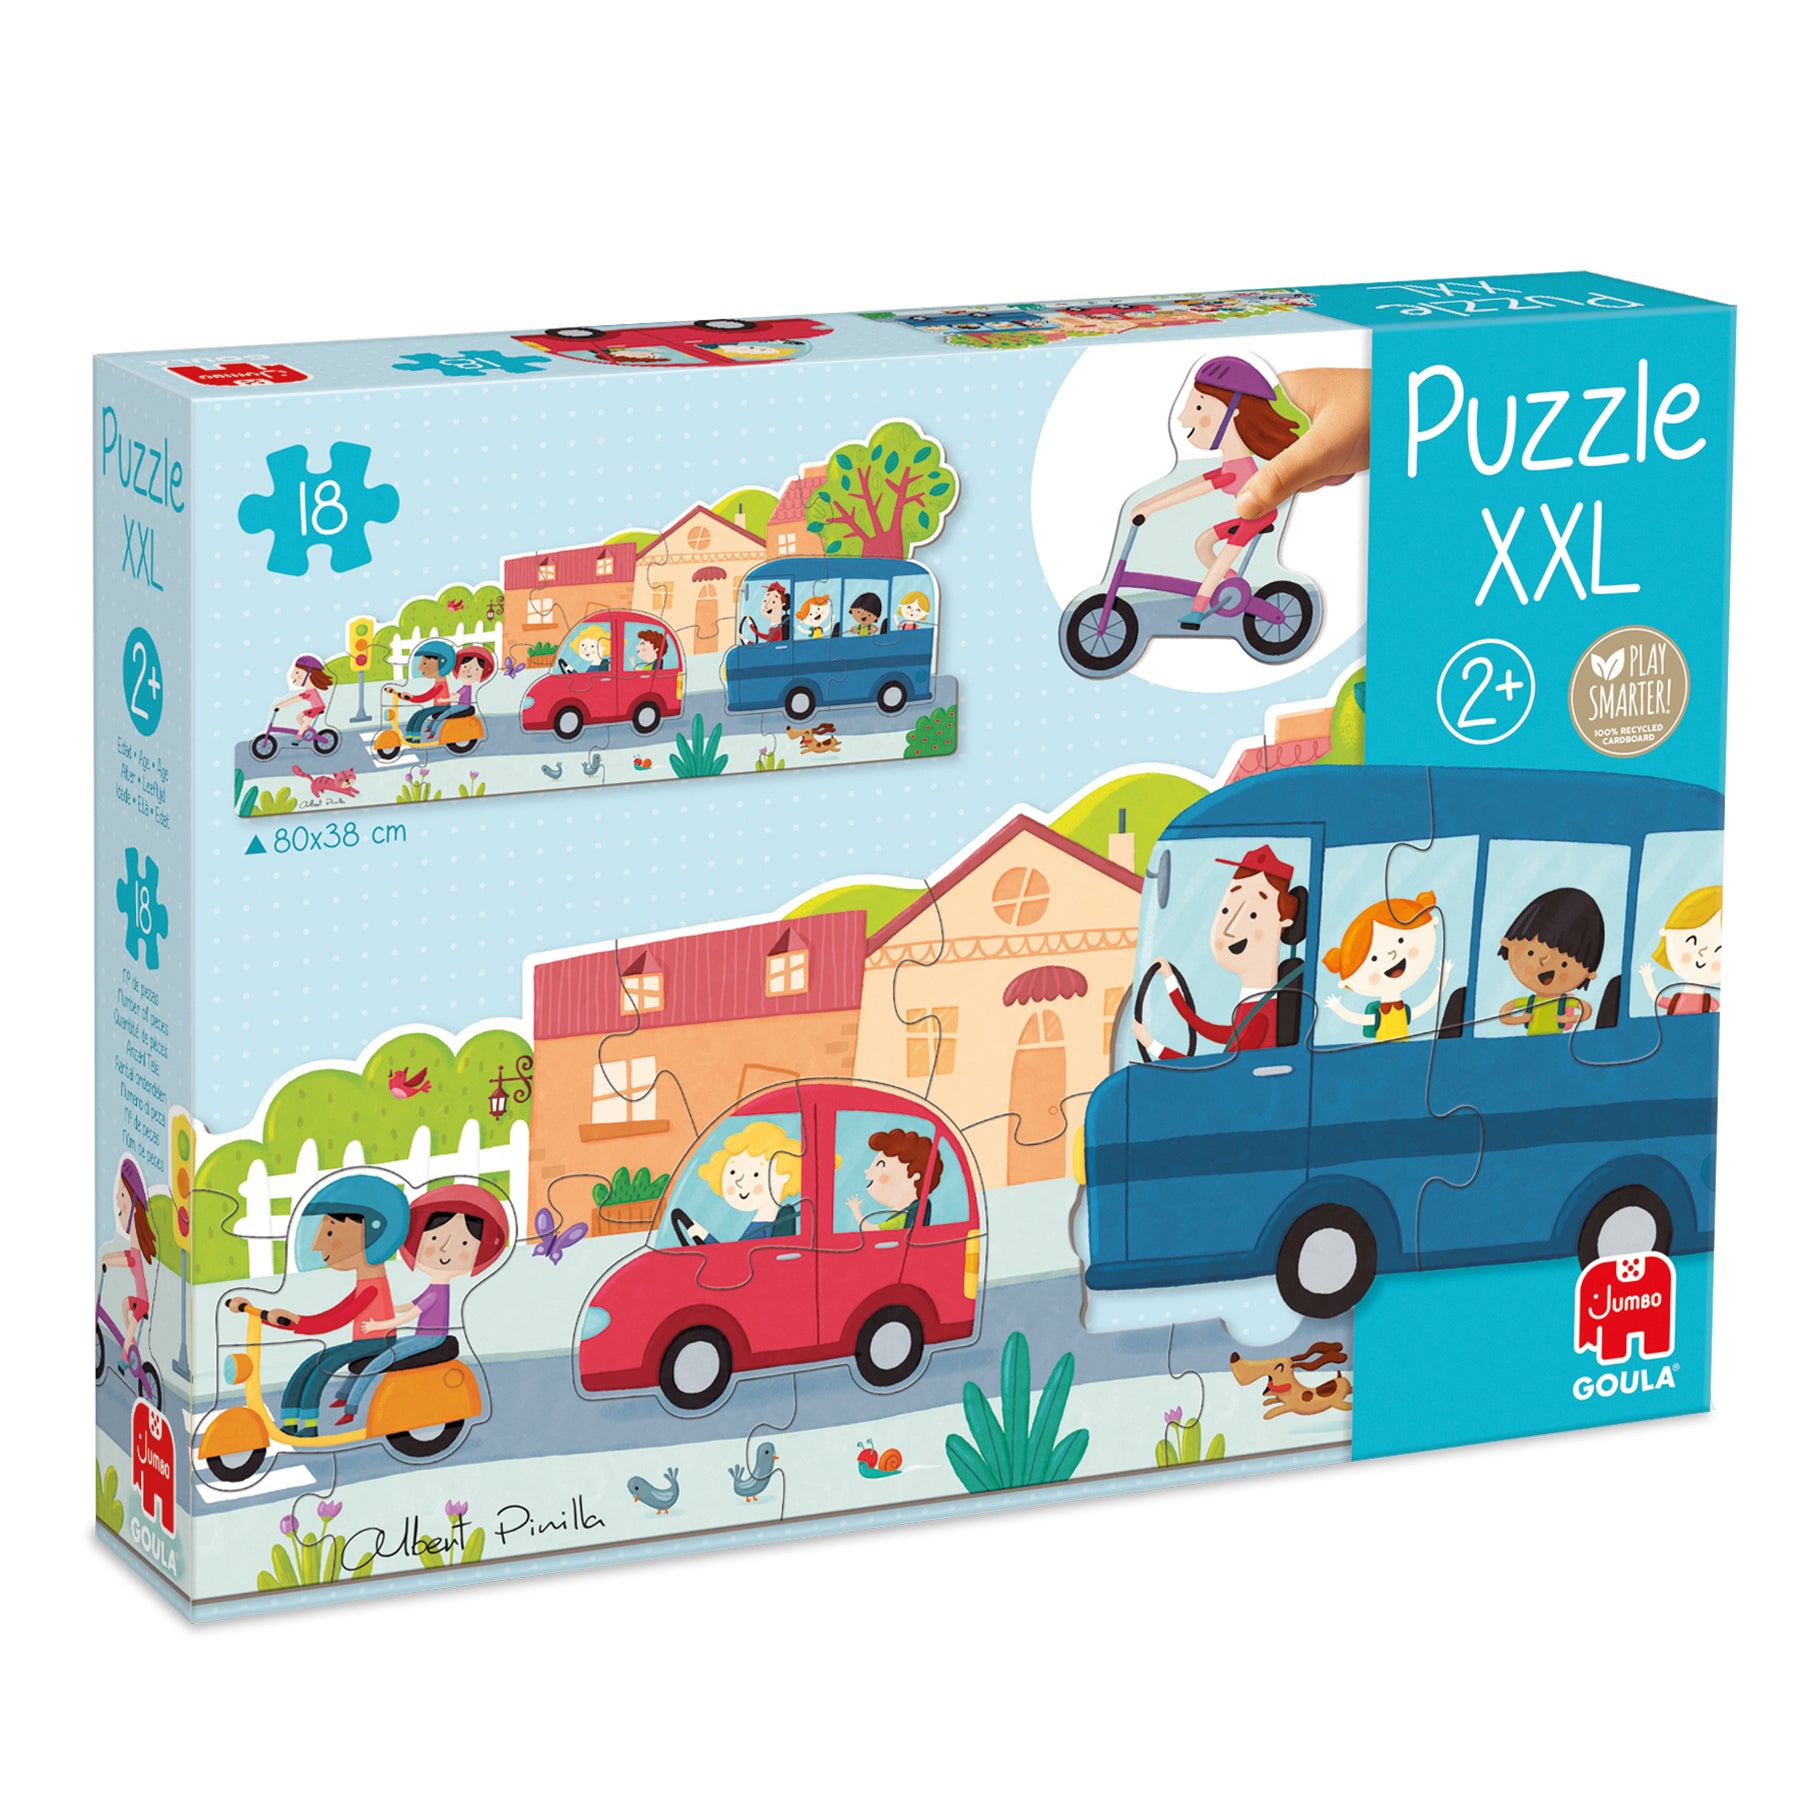 Puzzle XXL Vehicles - product image - Jumboplay.com